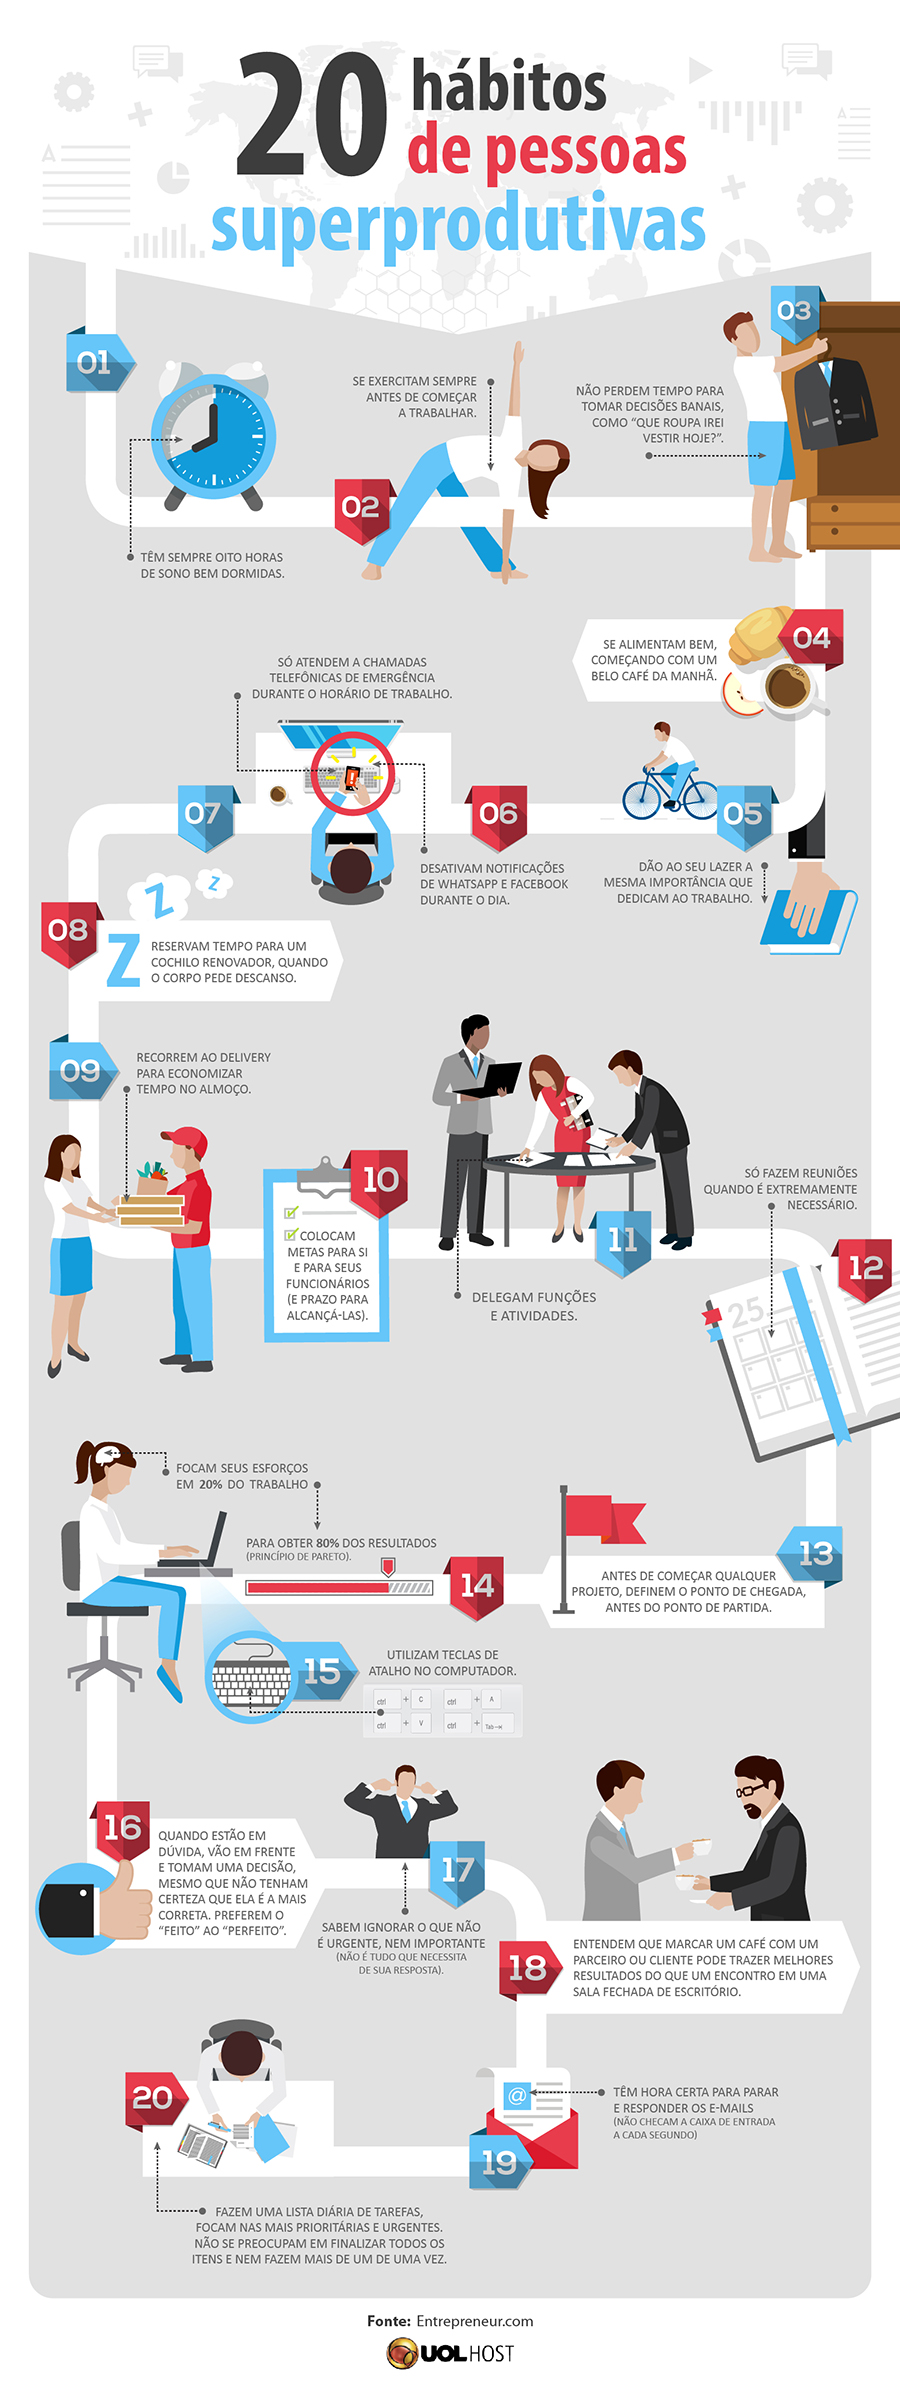 infografico vinte habitos de pessoas superprodutivas uol